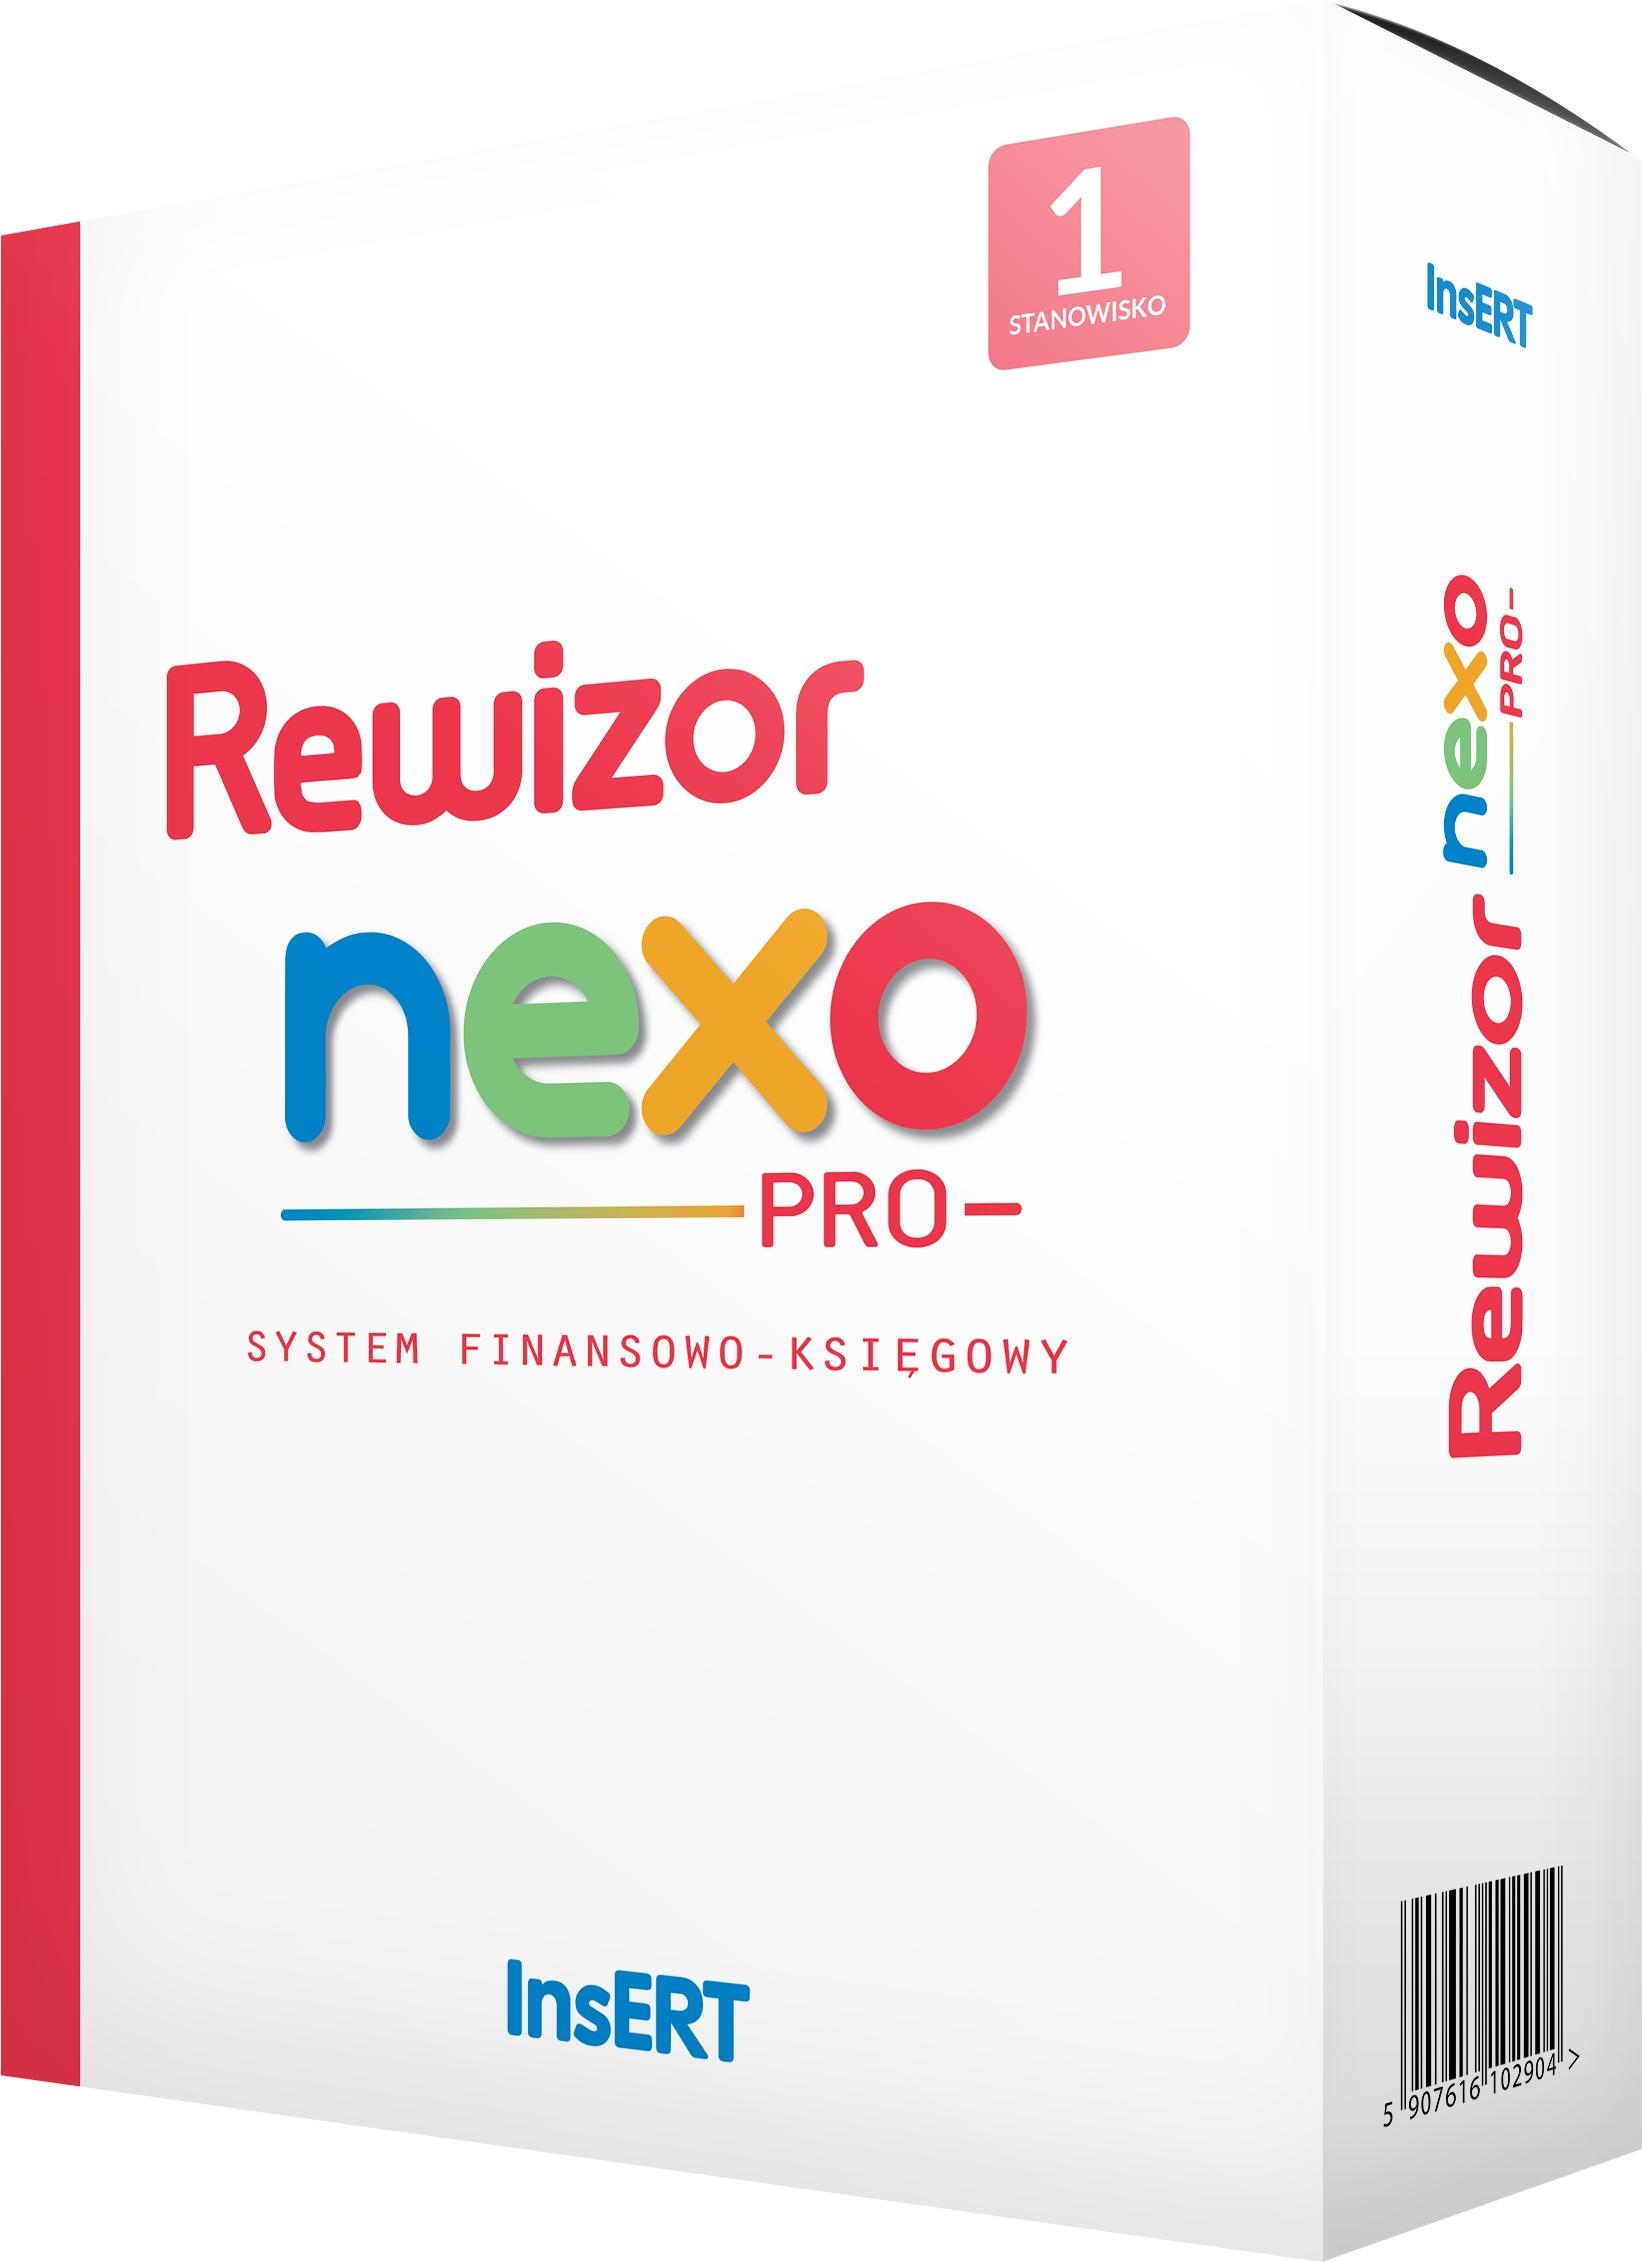 Pudełko programu Rewizor nexo PRO 1 stanowisko